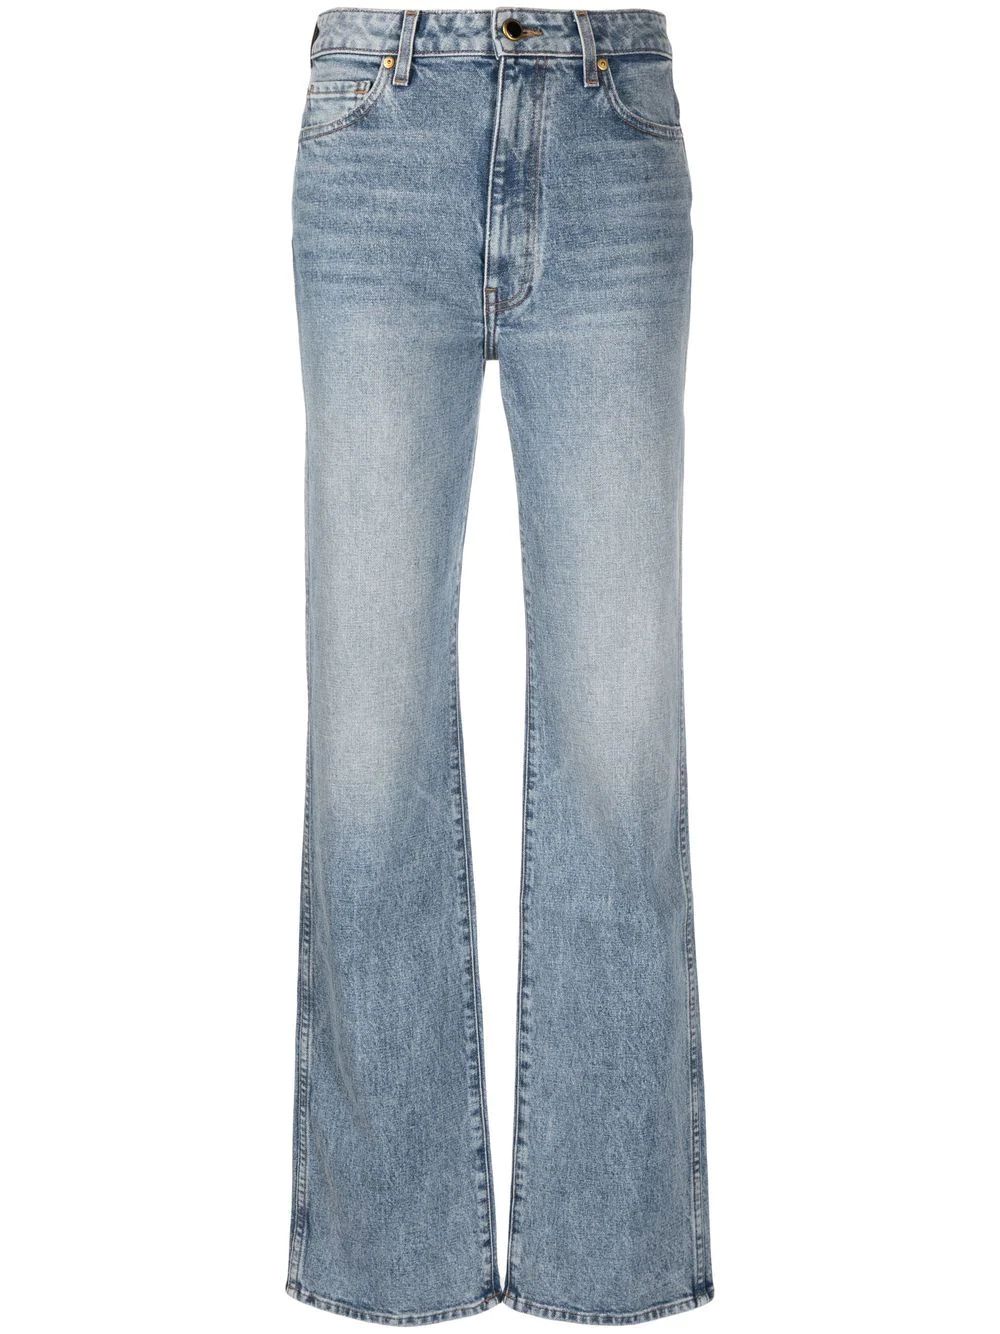 jeans rectos con tiro alto | Farfetch Global